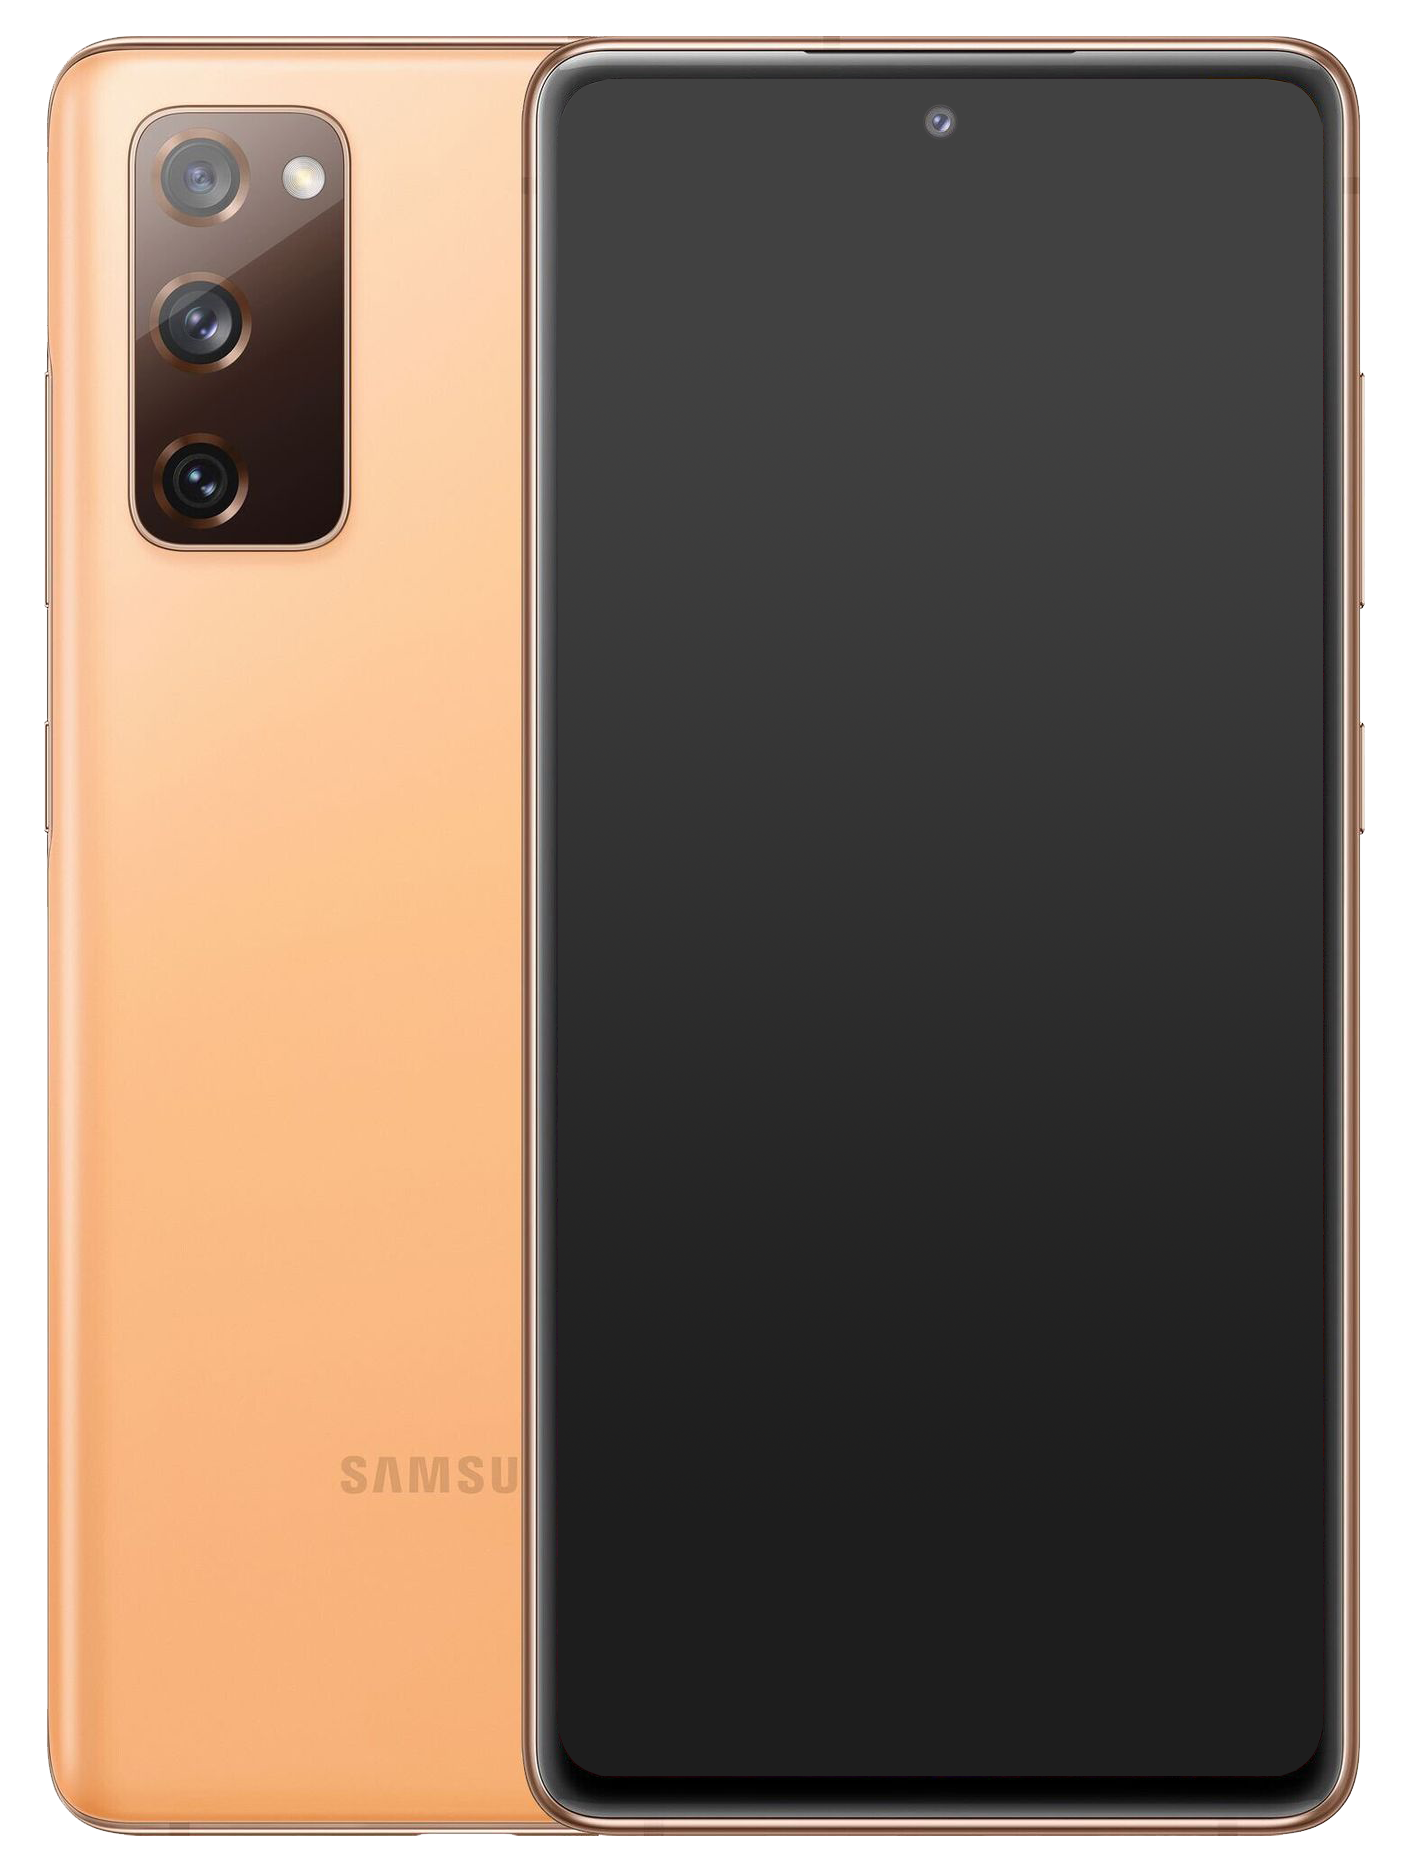 Samsung Galaxy S20 FE 5G Dual-SIM orange - Ohne Vertrag